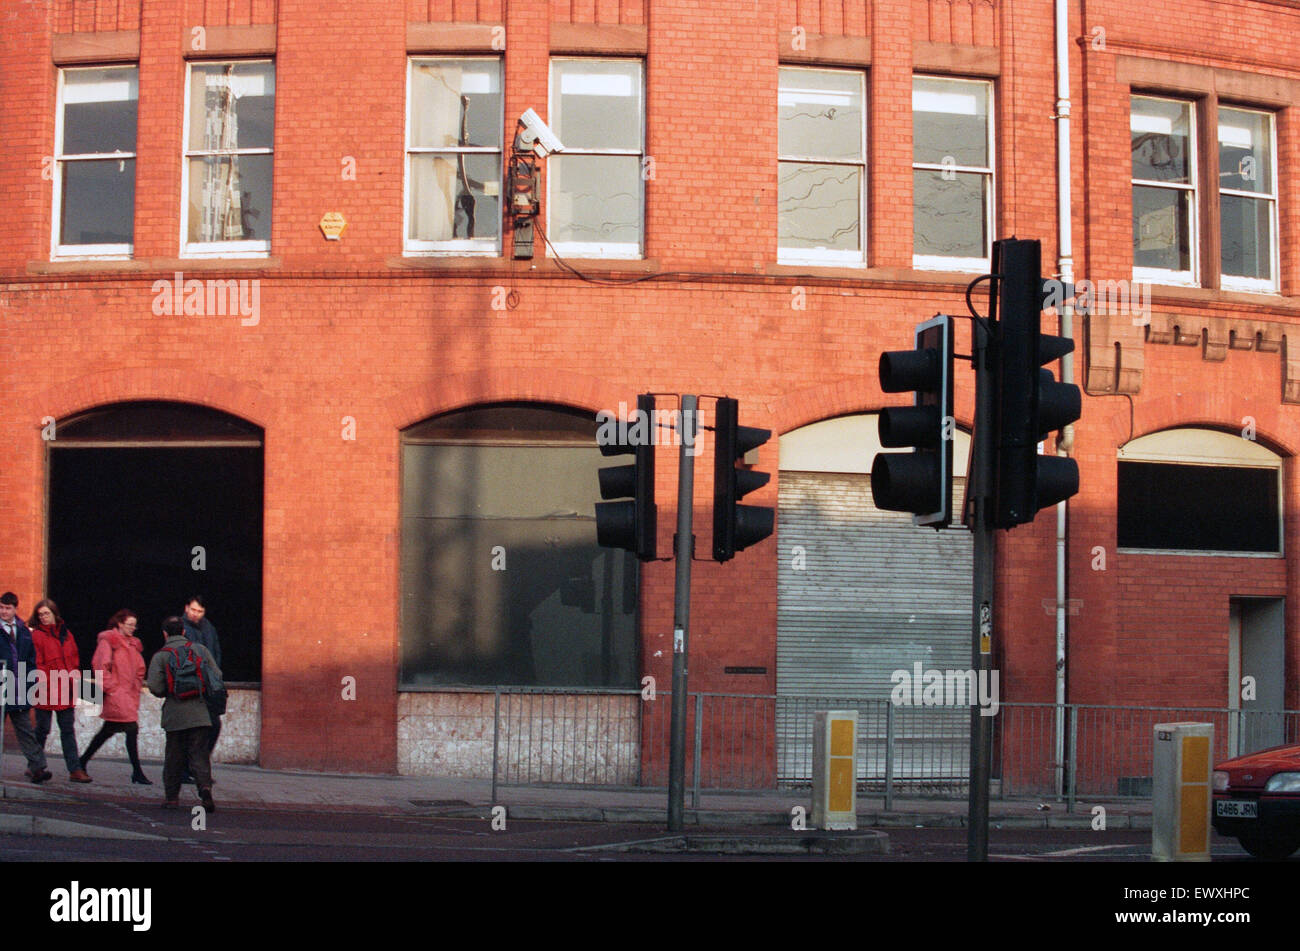 Website des berühmten Hacienda Nacht Club- und Veranstaltungsort in Whitworth Street West, Manchester. Sobald die bekannteste Club in der Welt bezeichnet, ist es mit dem Aufstieg der Acid-House und Rave-Musik in Verbindung gebracht. Fotos: 22. Dezember 1994. Stockfoto